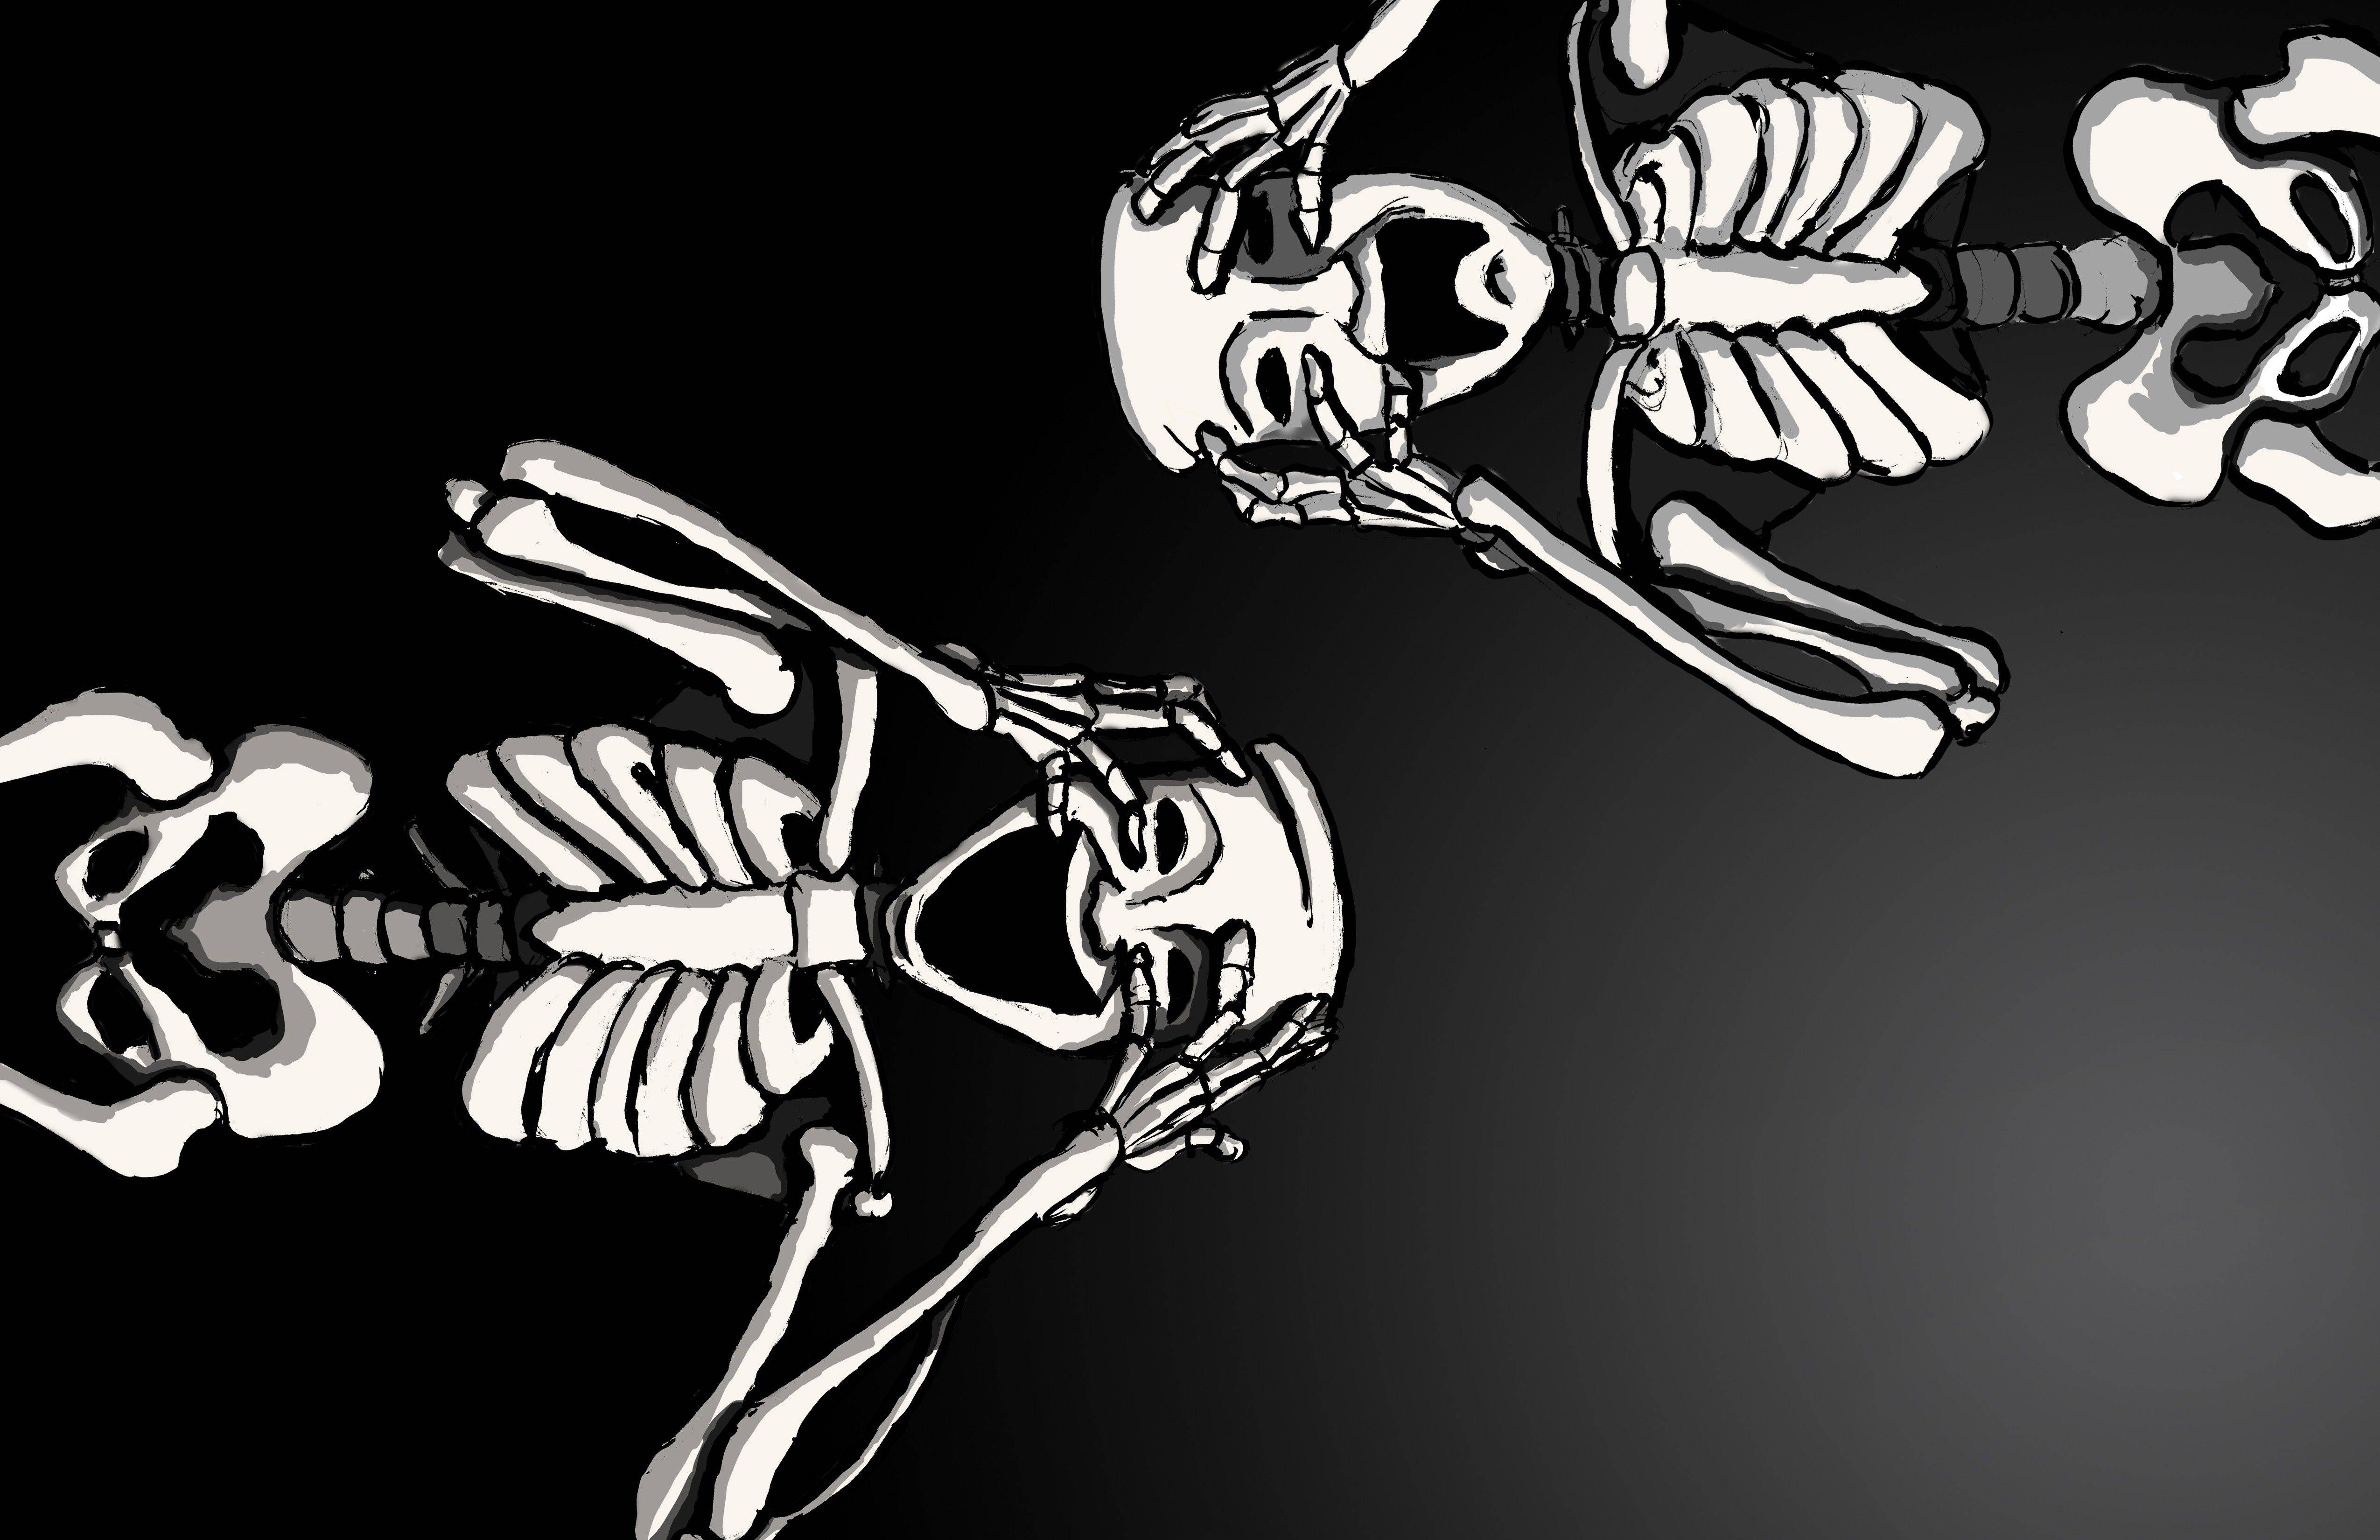 Skeleton Wallpaper. Skeleton Wallpaper, Funny Skeleton Wallpaper and Scary Skeleton Wallpaper